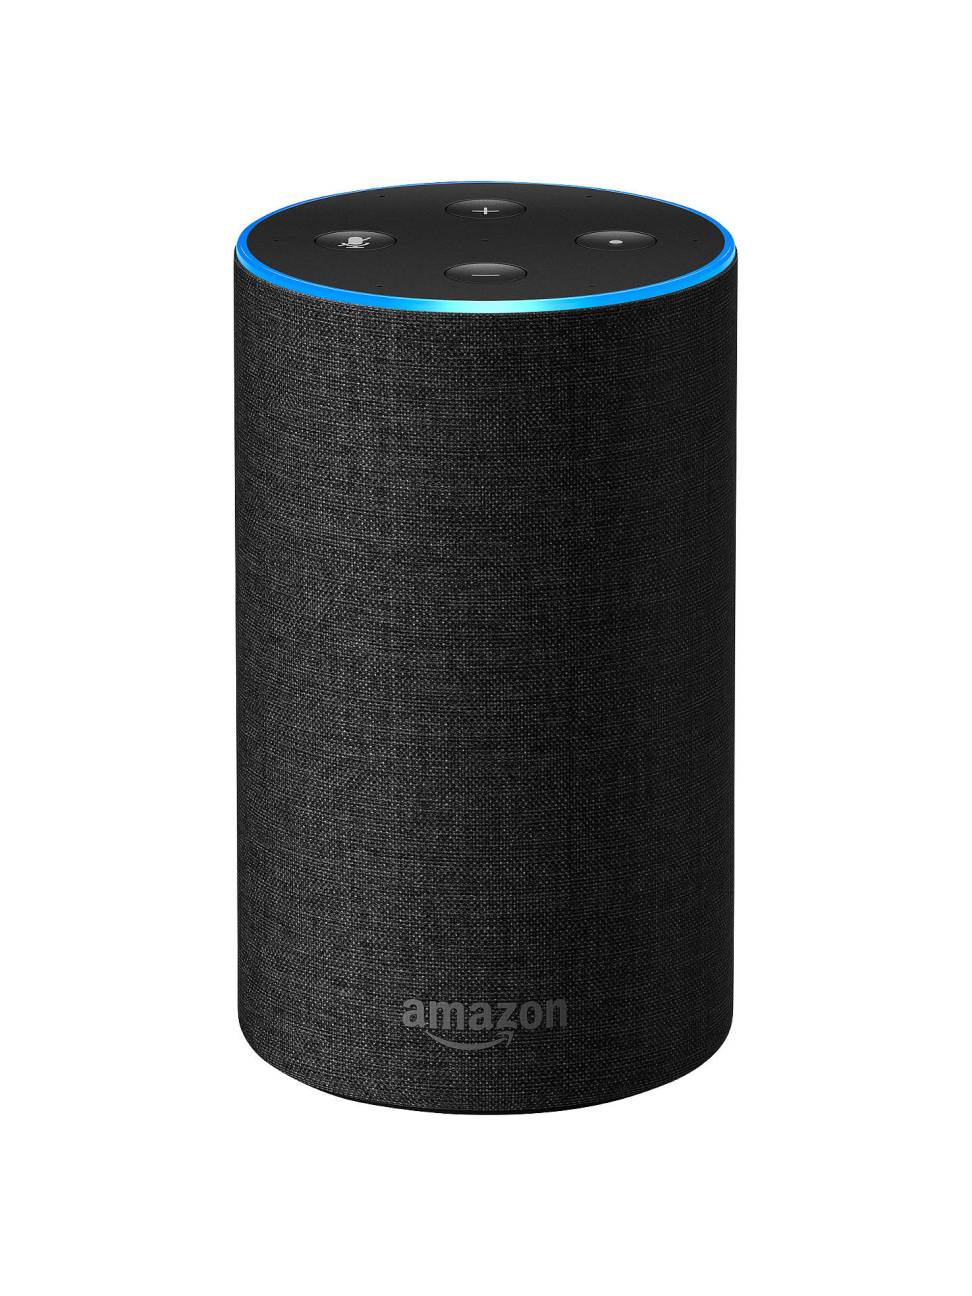 Amazon echo large speaker.